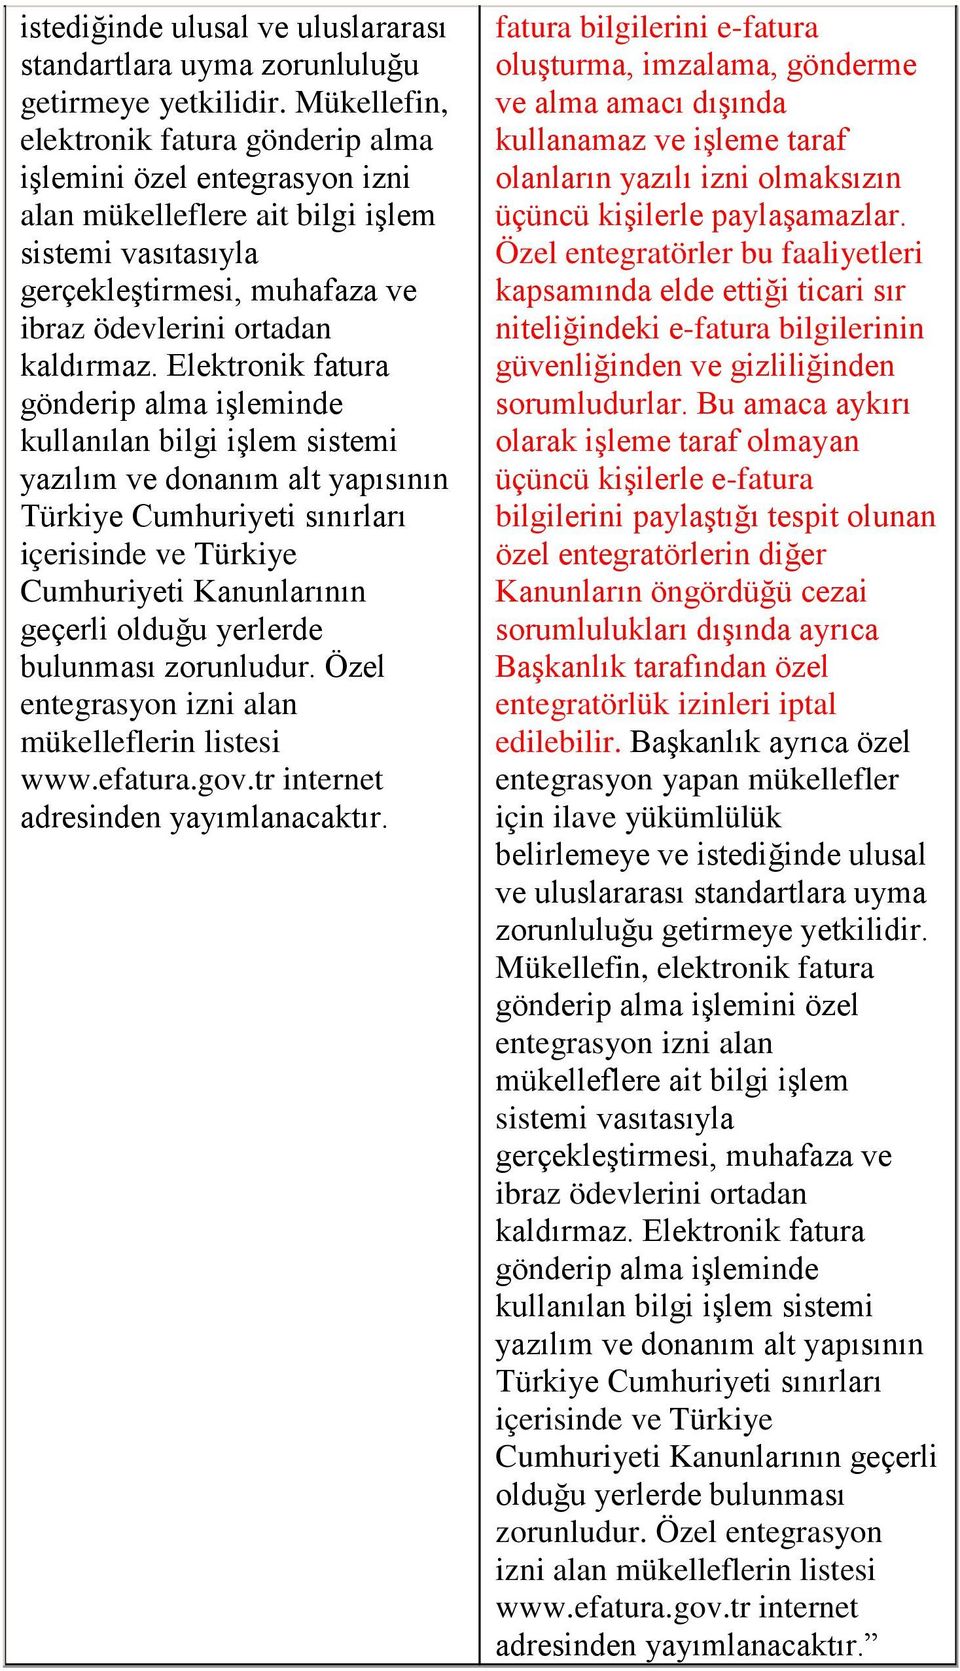 Elektronik fatura gönderip alma işleminde kullanılan bilgi işlem sistemi yazılım ve donanım alt yapısının Türkiye Cumhuriyeti sınırları içerisinde ve Türkiye Cumhuriyeti Kanunlarının geçerli olduğu